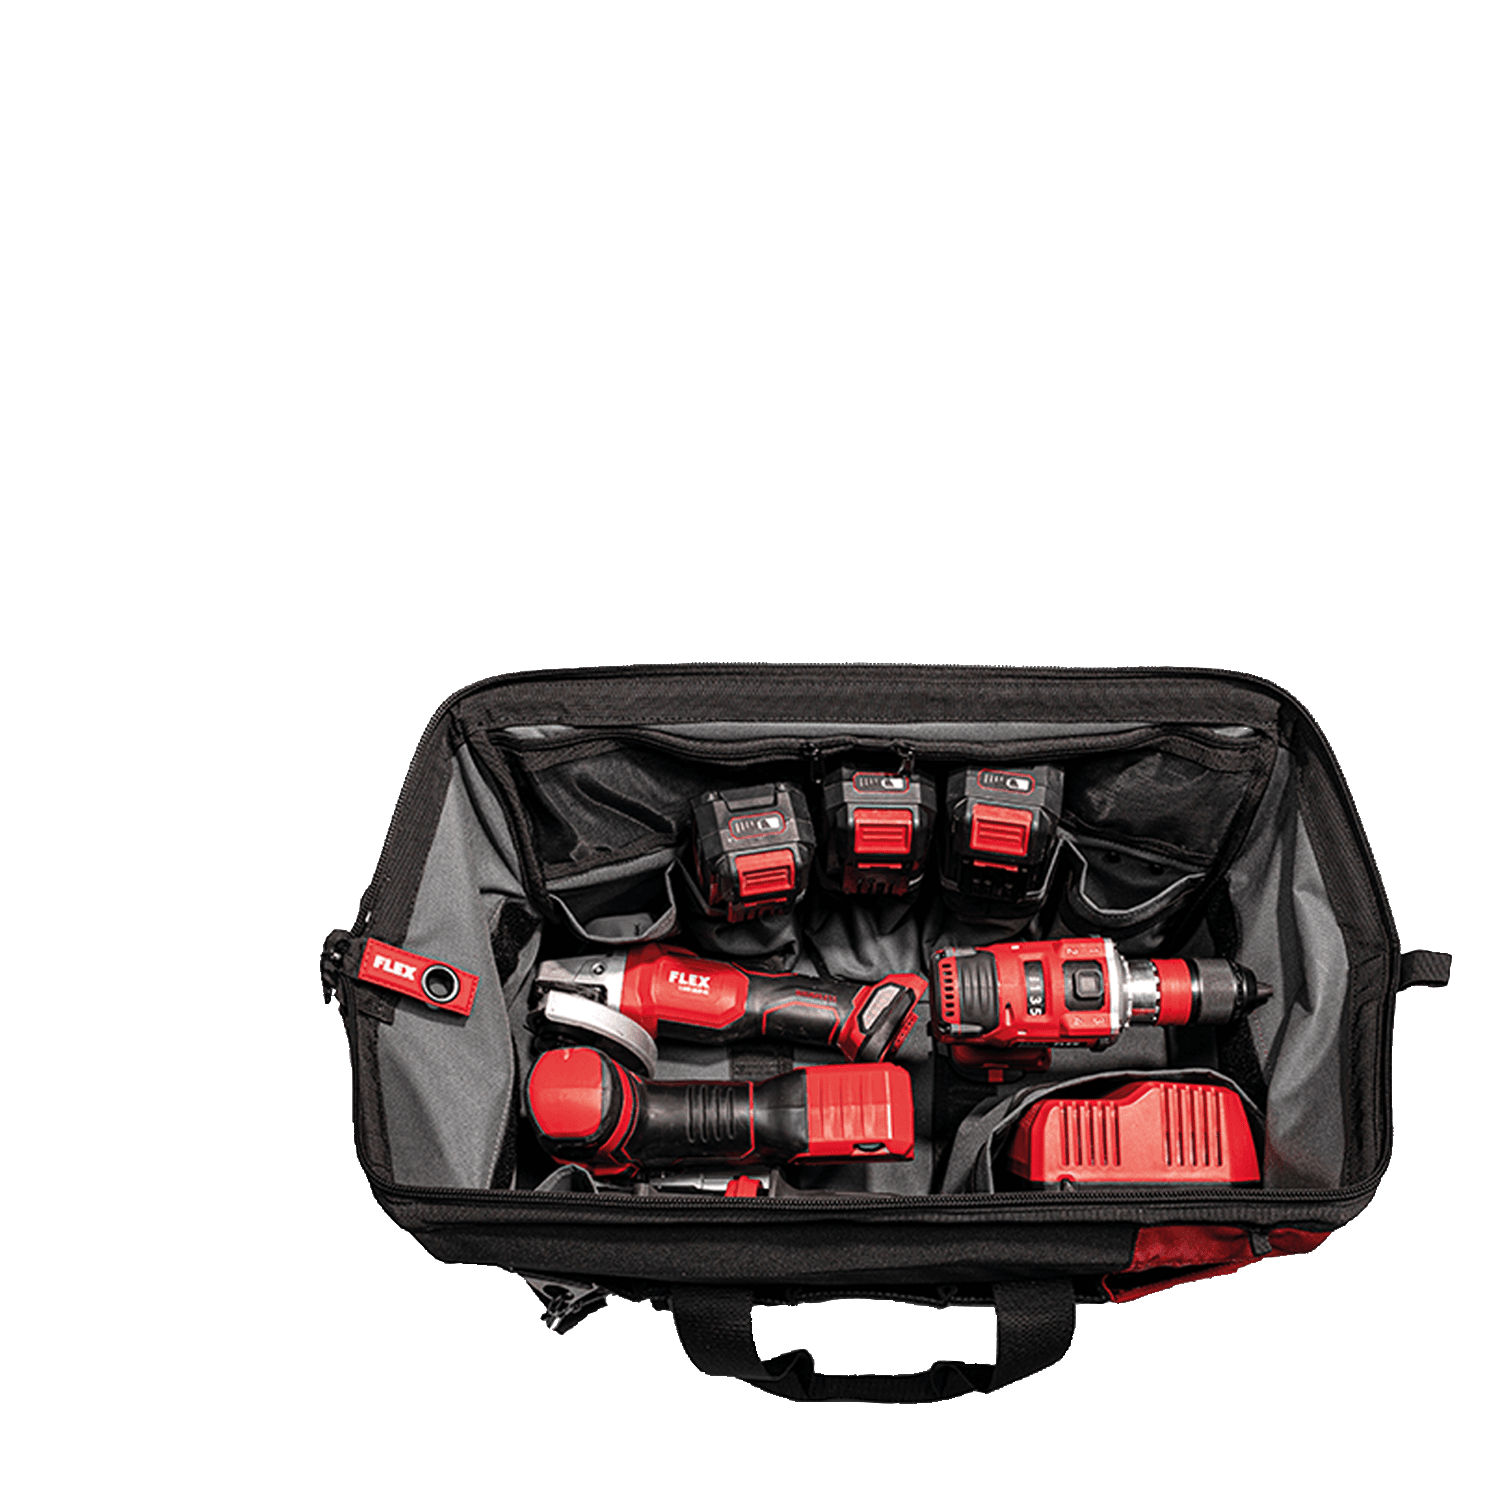 Sac FLEXPACK contenant différents outils électriques sans fil FLEX et un chargeur